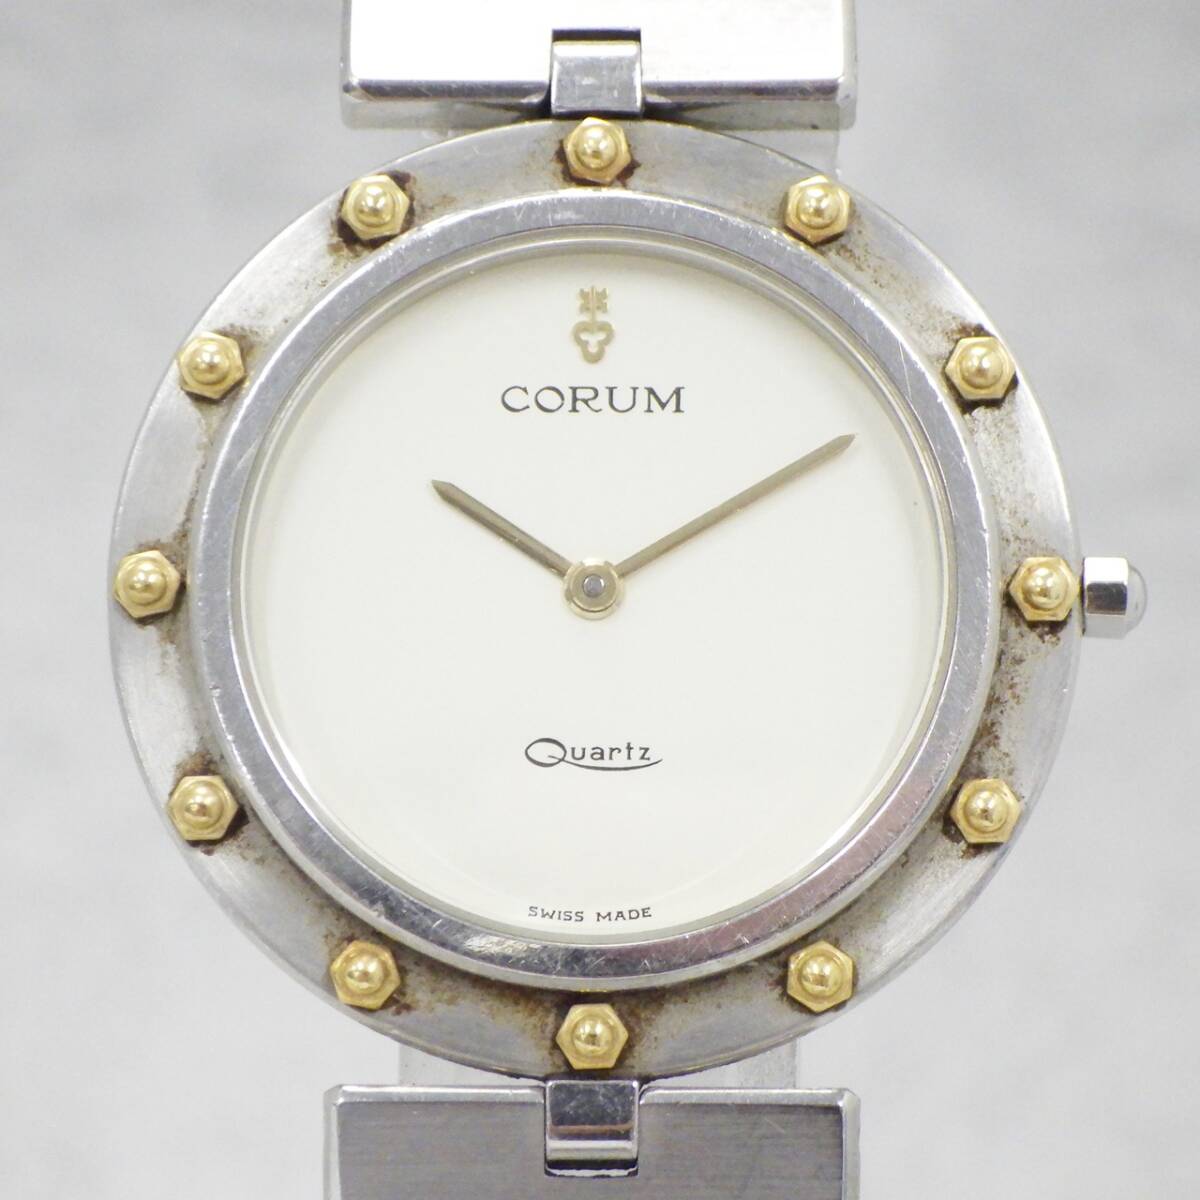 01 15-593579-16 [Y] CORUM コルム クリッパークラブ クォーツ 腕時計 メンズ レディース 札15の画像1